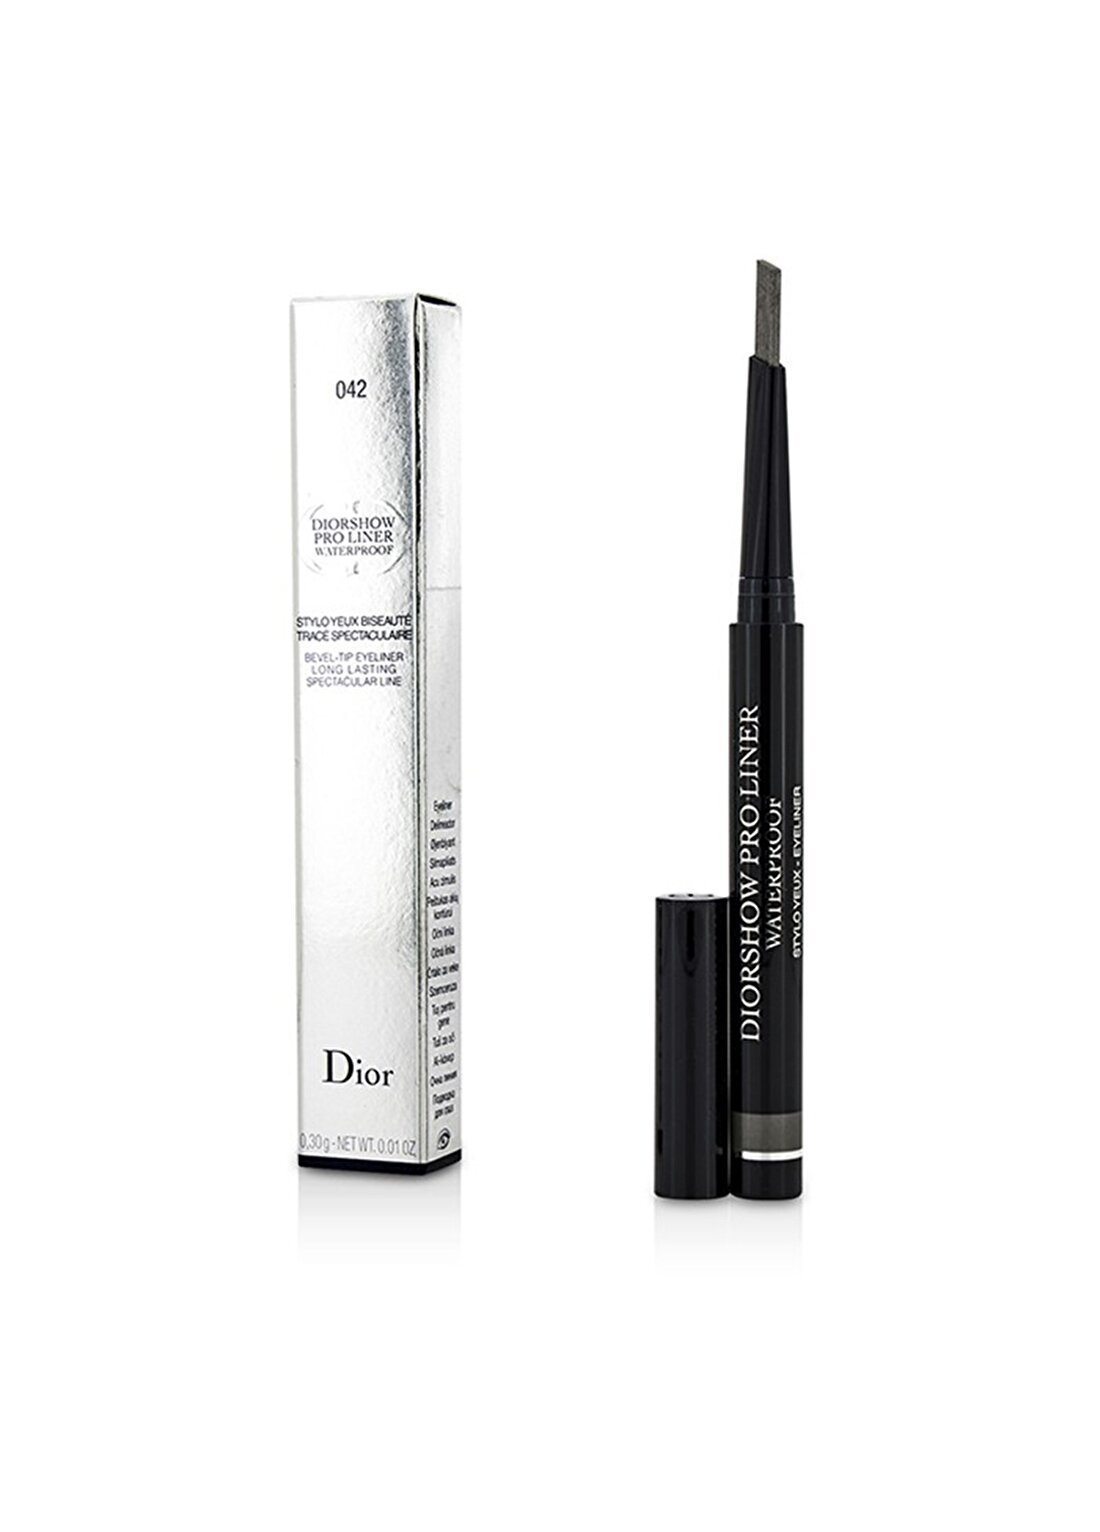 Dior Diorshow Pro Liner 042 Pro Grey Eyeliner